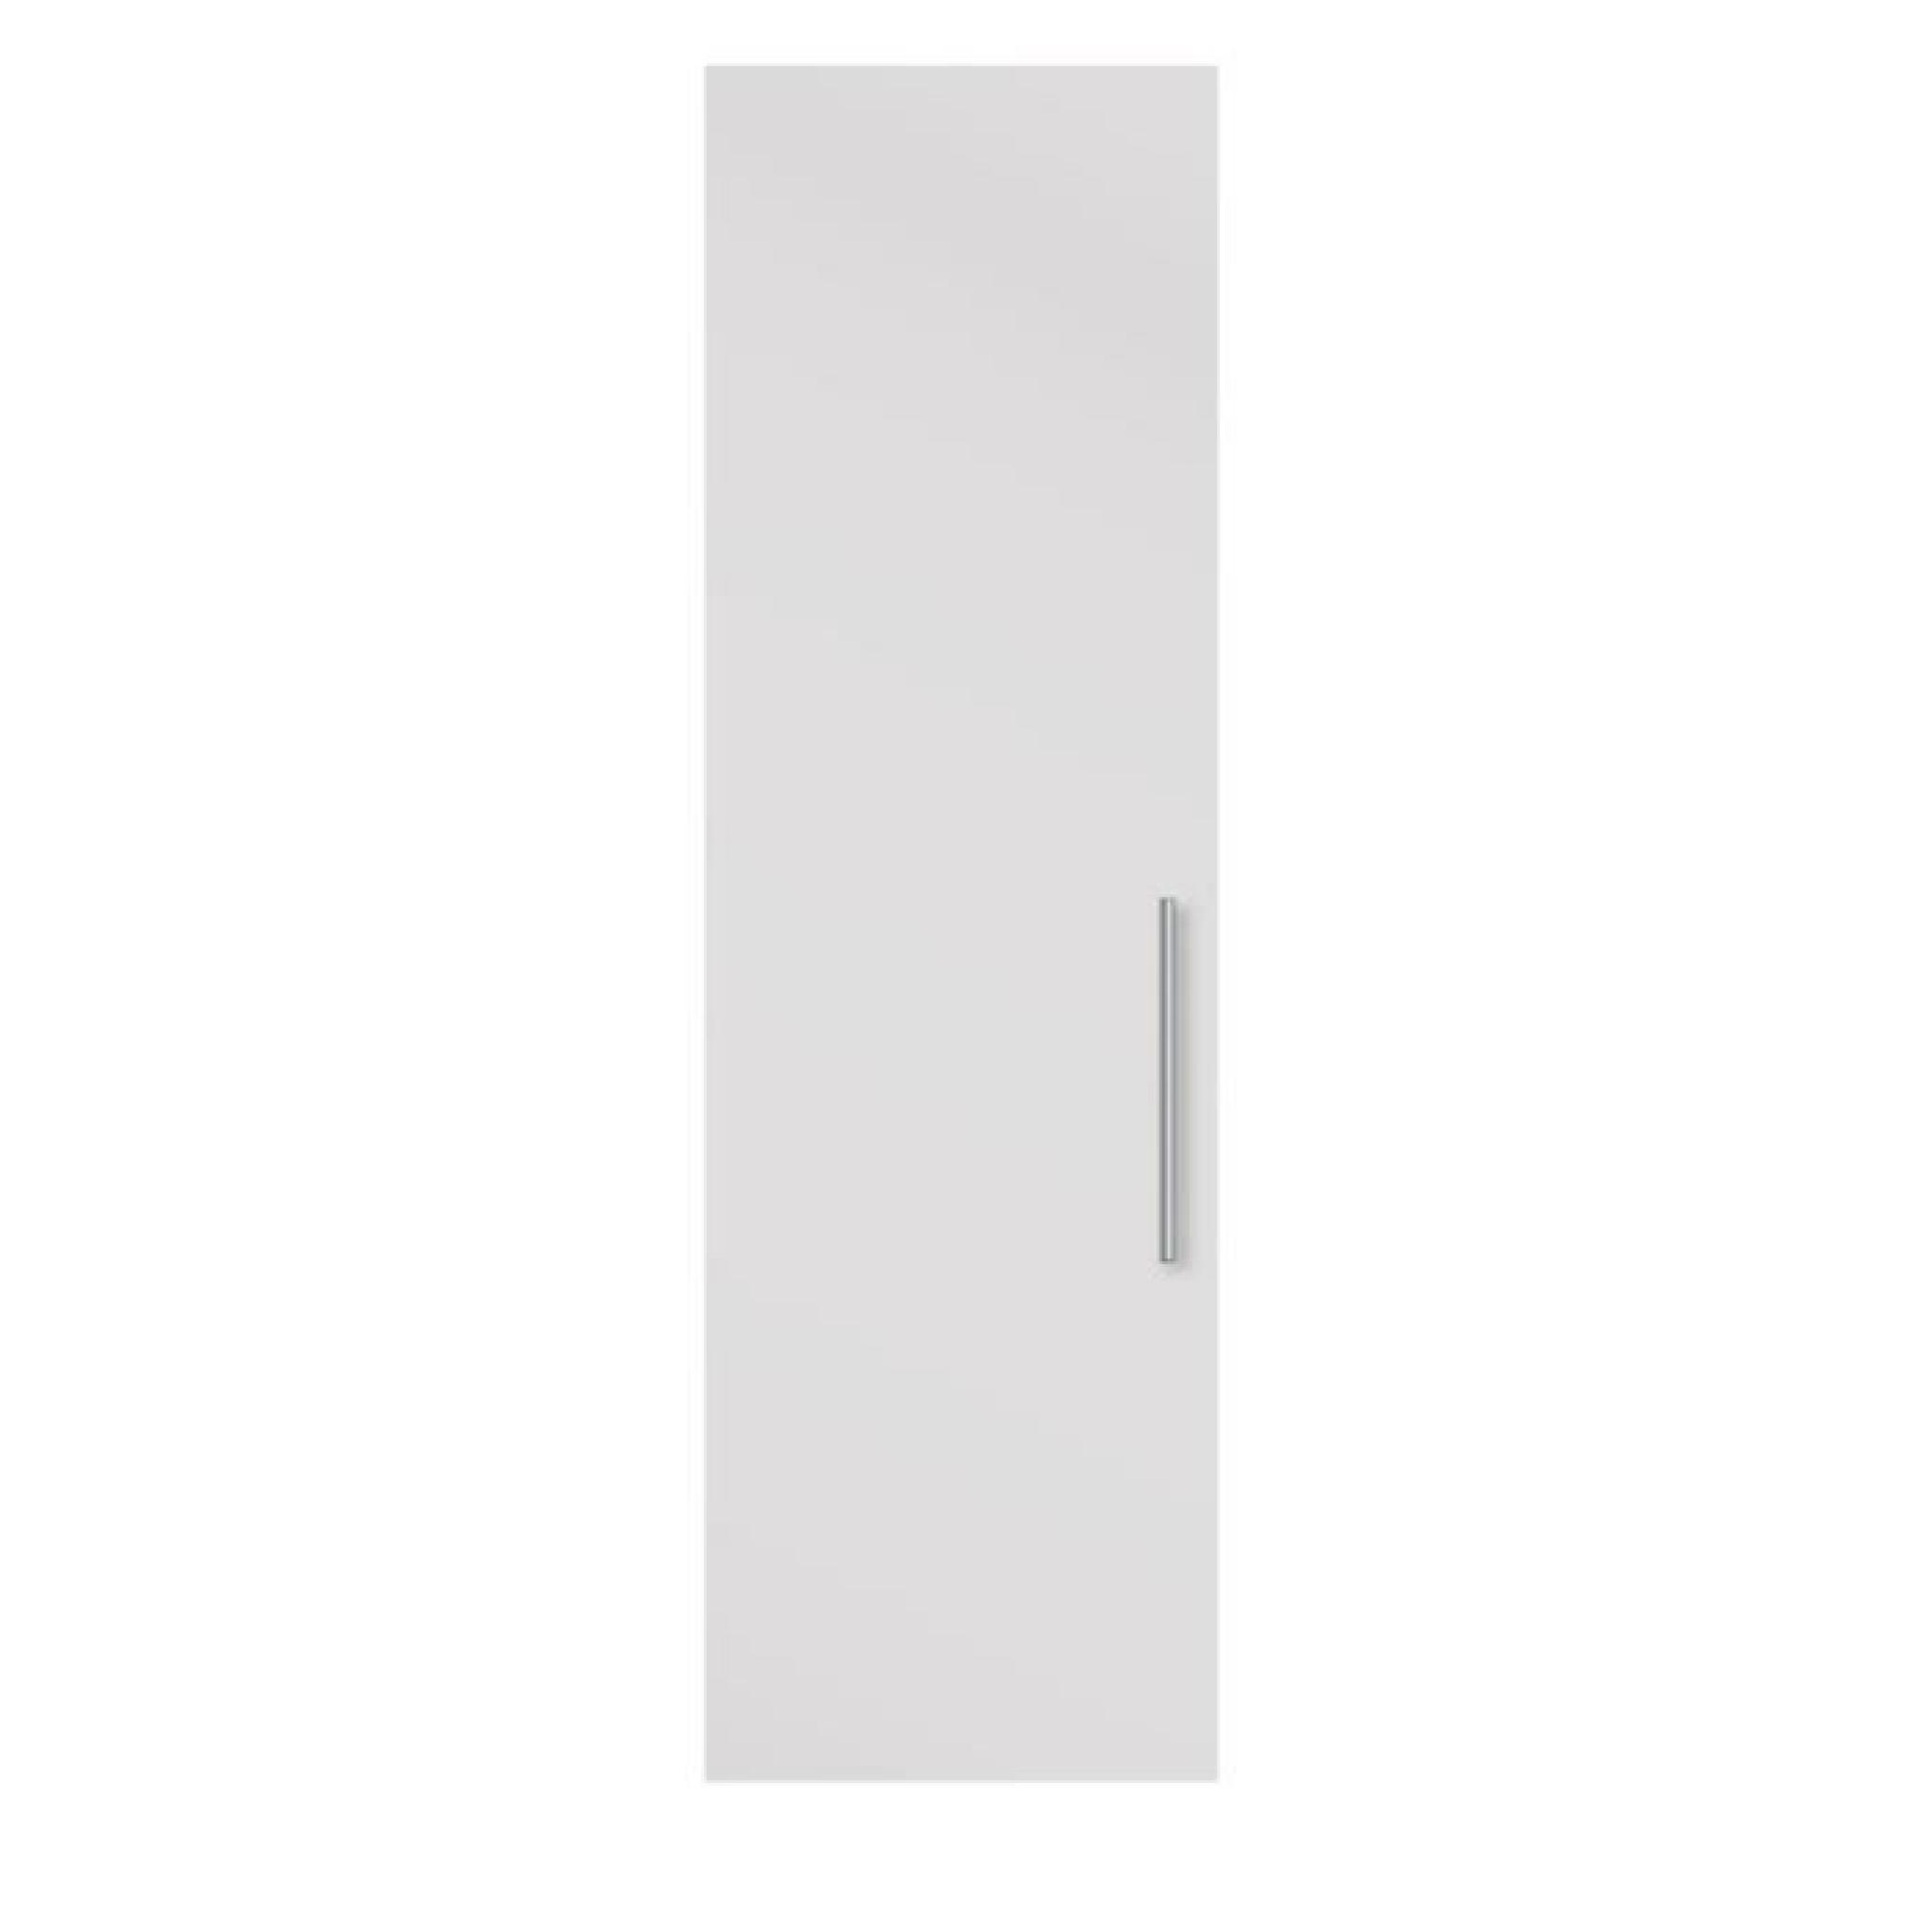 Porte battante blanche pour caisse de dressing - Dim : H 228 x L 49 x P 1 cm